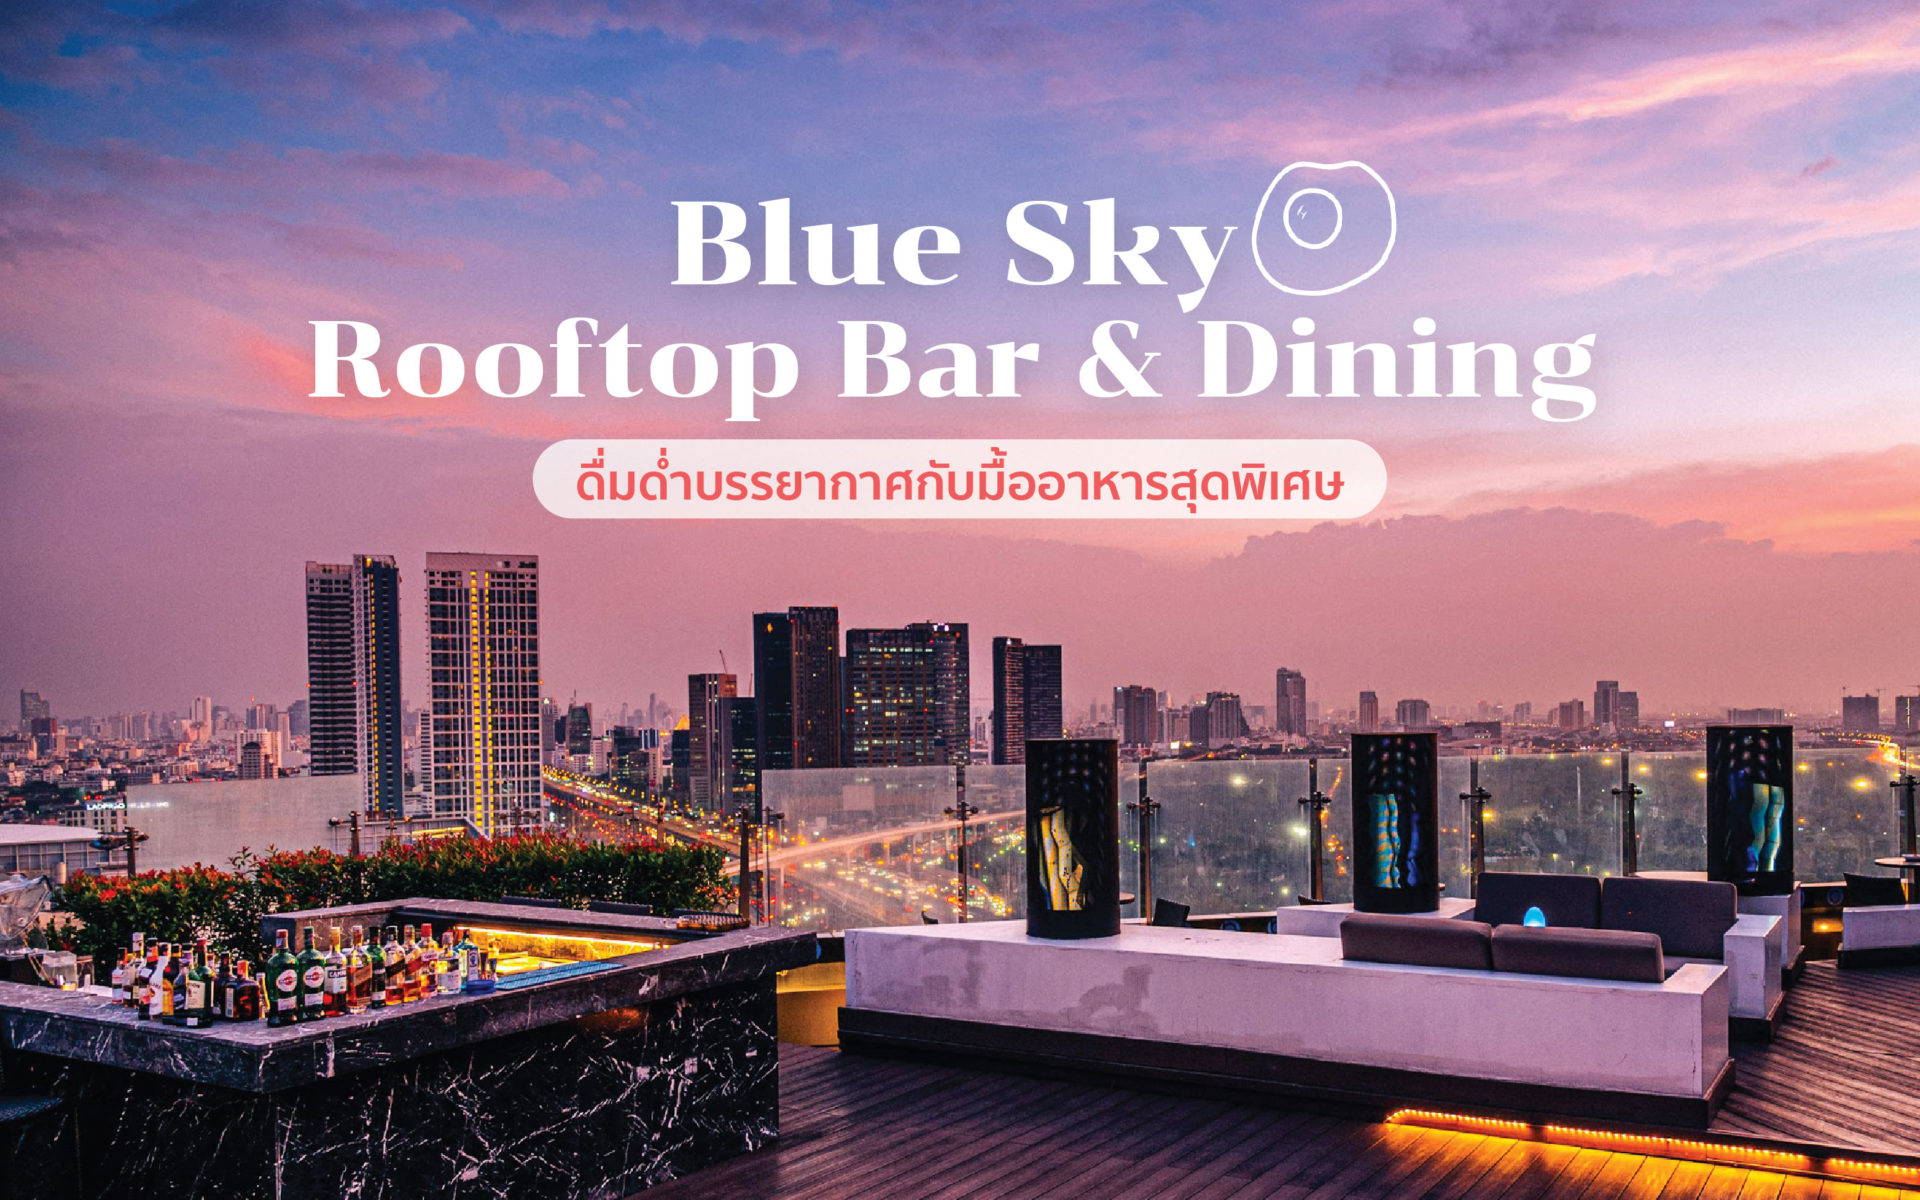 ดื่มด่ำบรรยากาศกับมื้ออาหารสุดพิเศษที่ Blue Sky Rooftop Bar & Dining